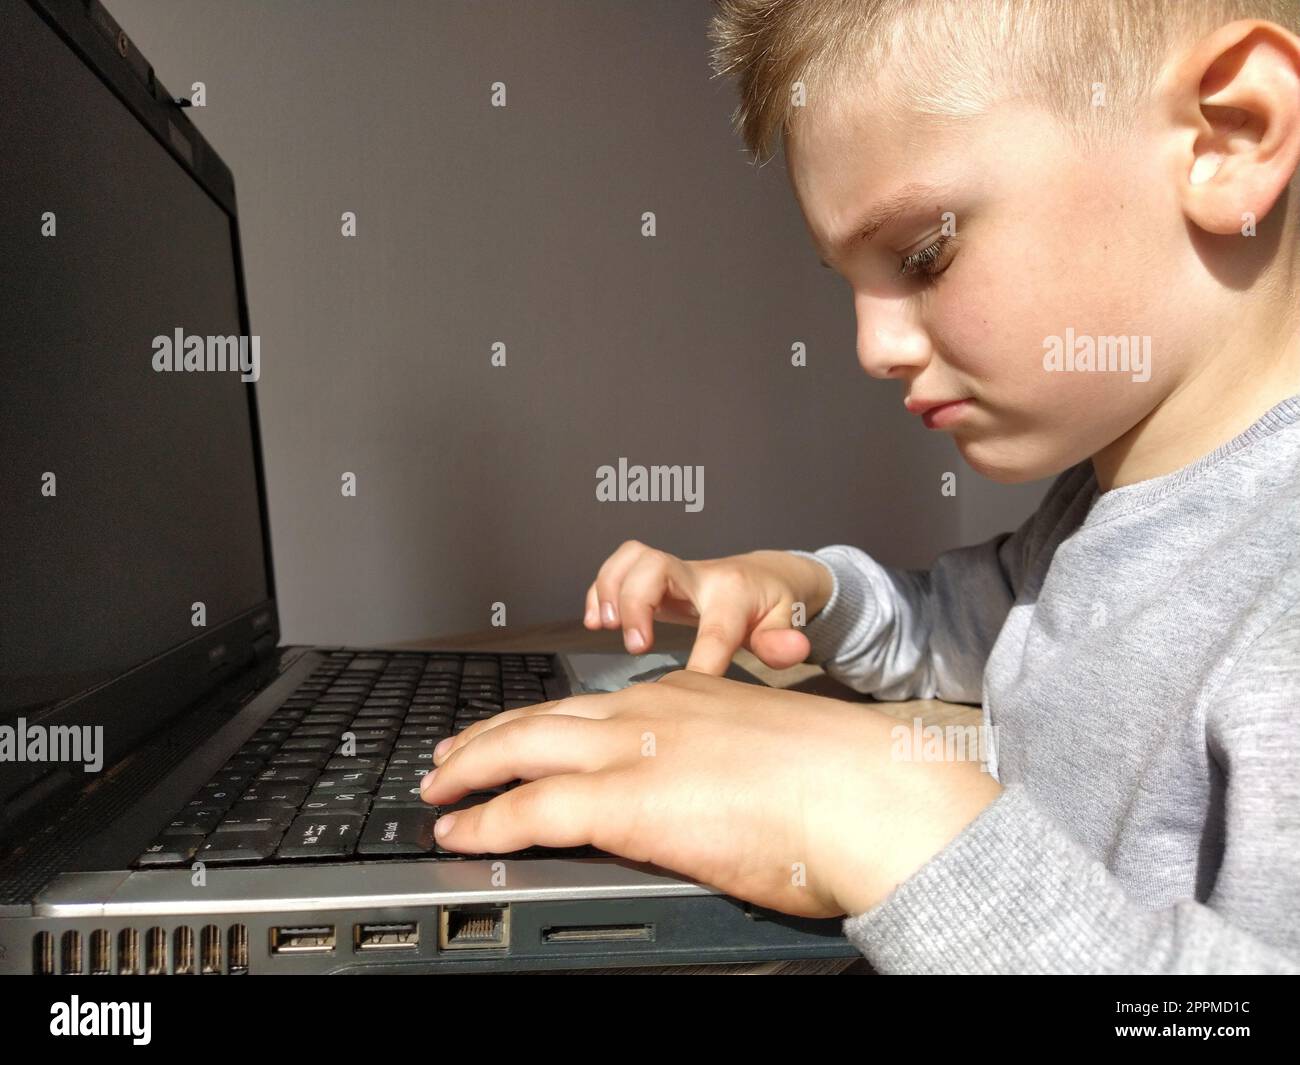 Il bambino con il computer. Il ragazzo accende il portatile. La tastiera nera. Un bambino con i capelli biondi. Faccia pensiva. Concetto di istruzione. Concetto di dipendenza da gadget Foto Stock